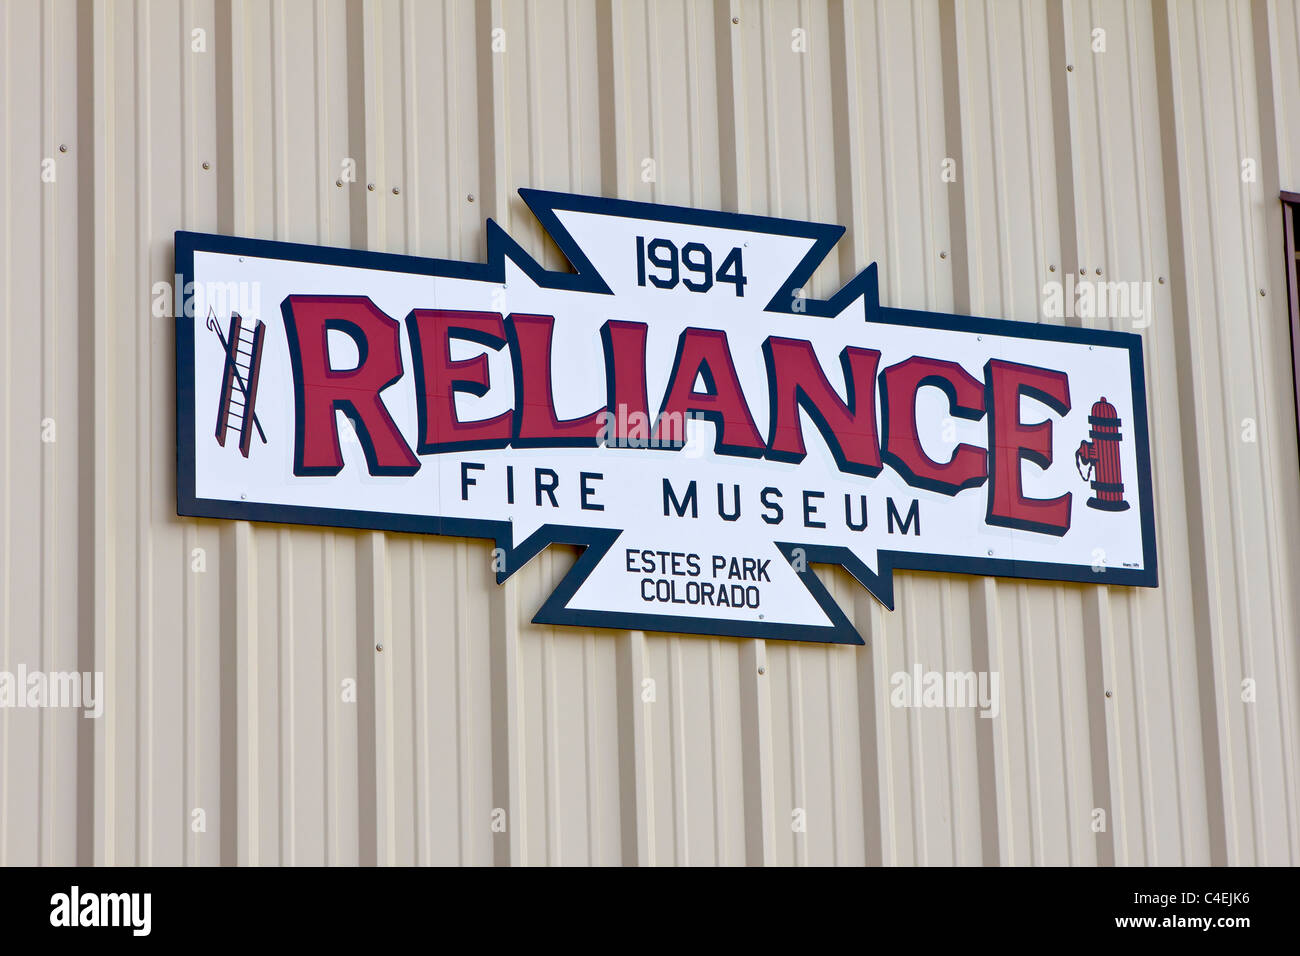 Estes Park, Colorado - Reliance Fire Museum widmet sich der Erhaltung, Restaurierung und Betrieb des Feuer-Apparats. Stockfoto